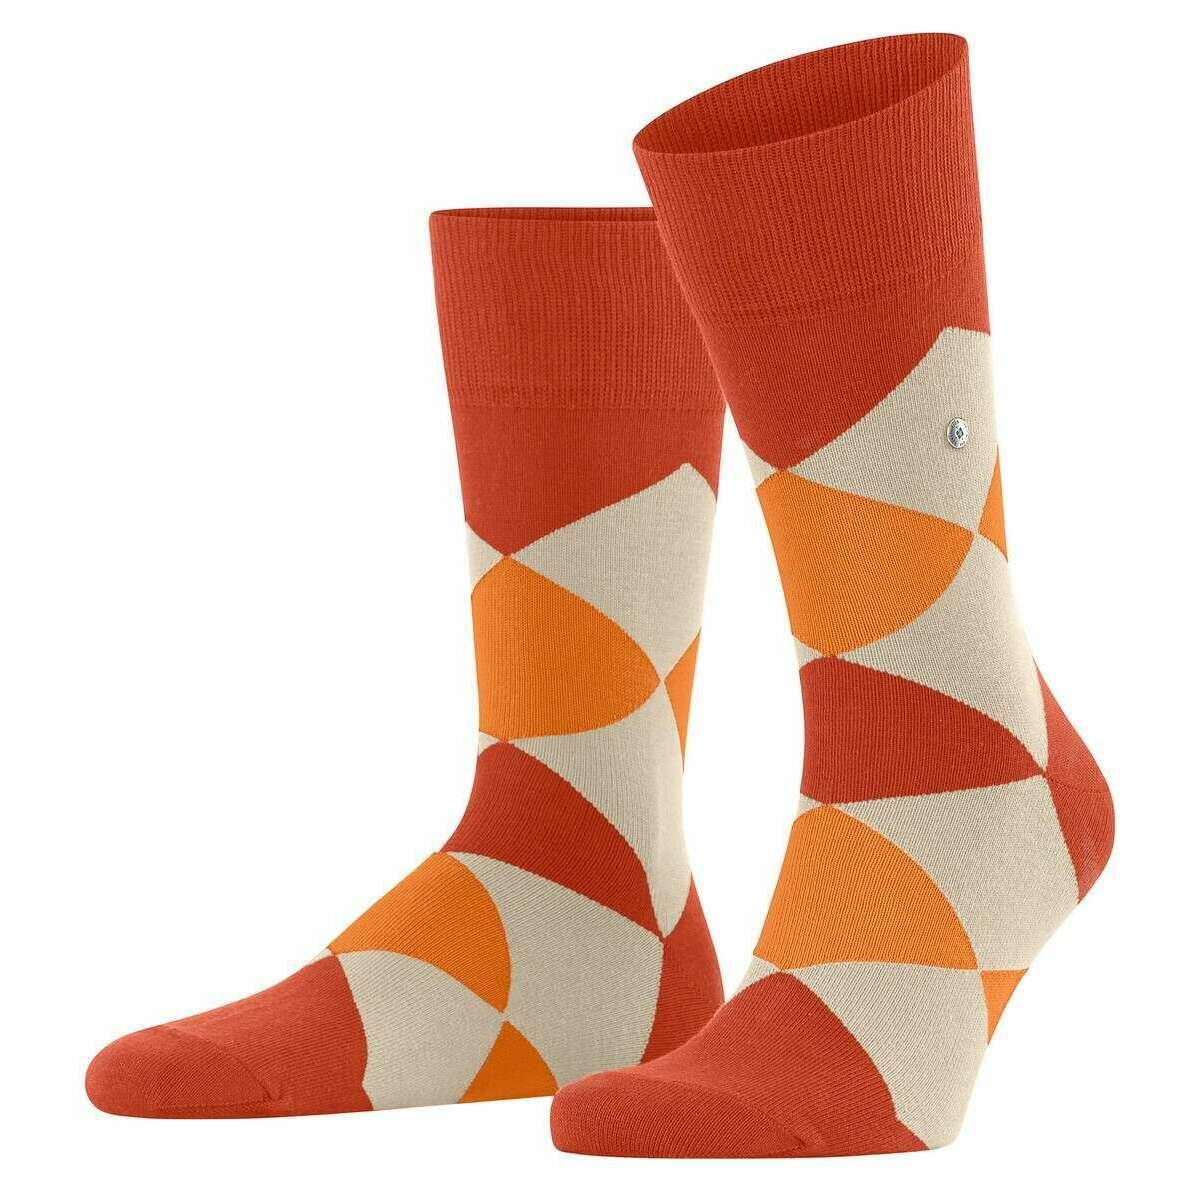 Burlington Clyde Socks - Ziegel Orange